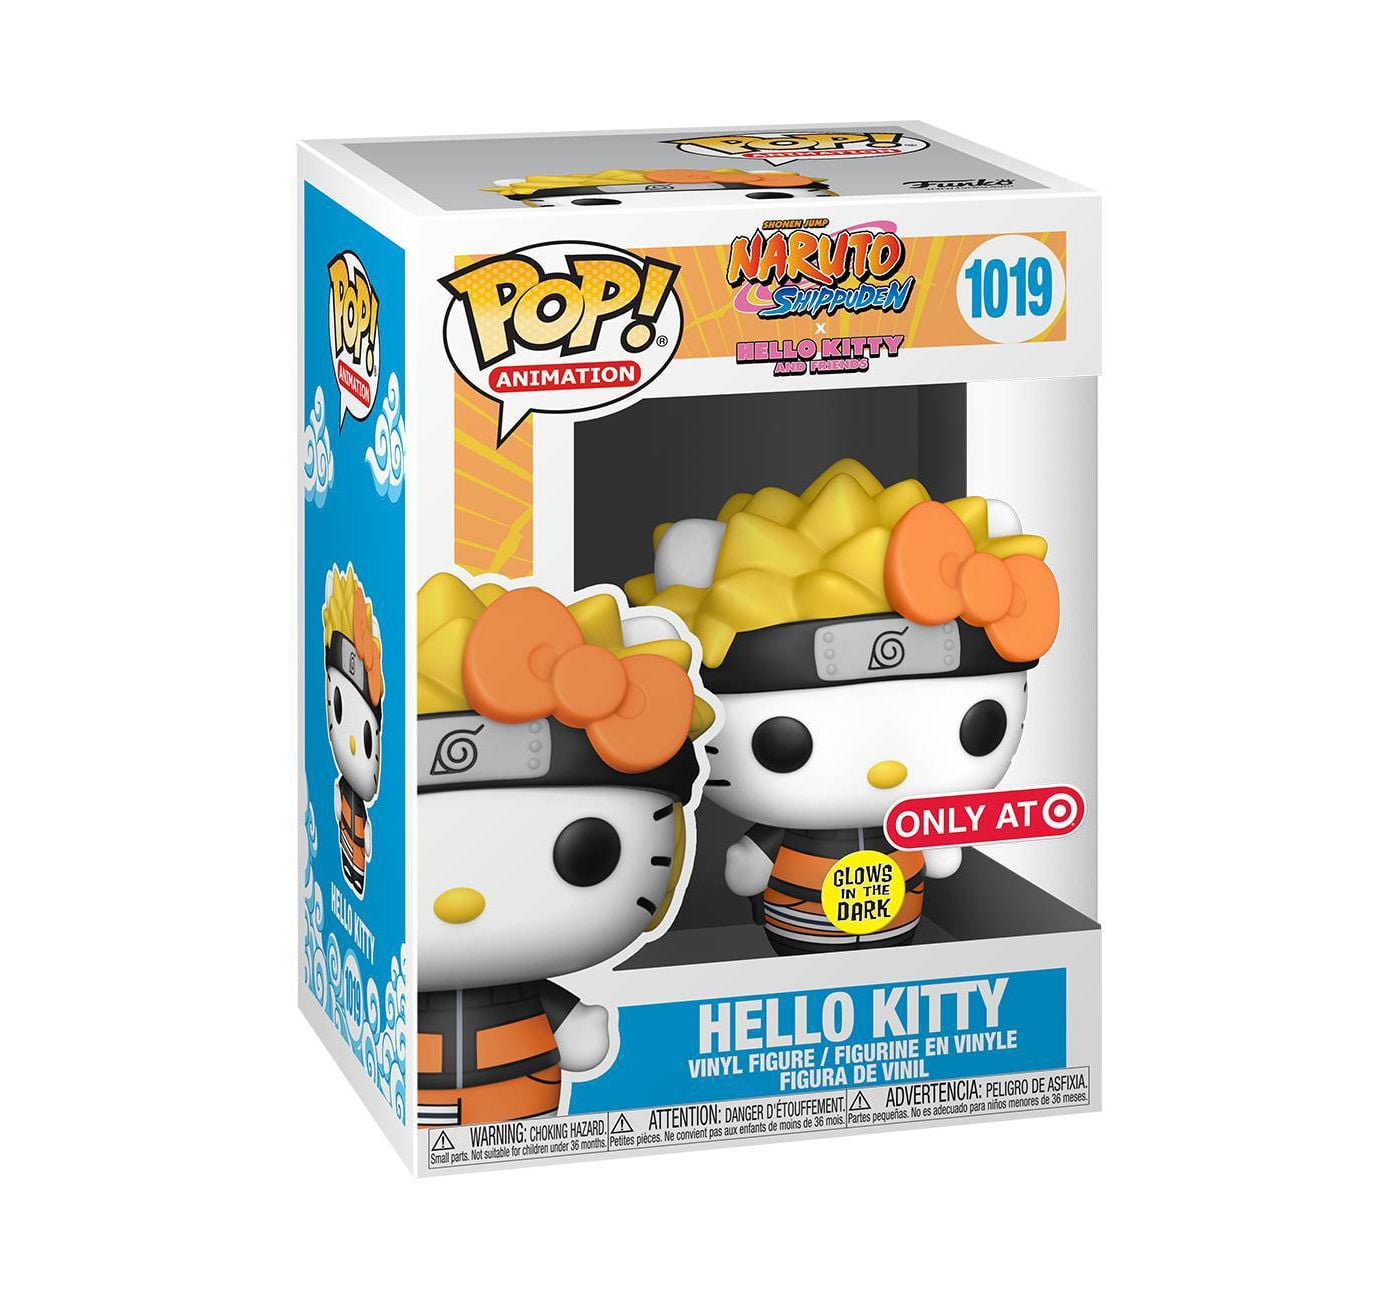 Hello Kitty Poster - Hug - NerdKungFu